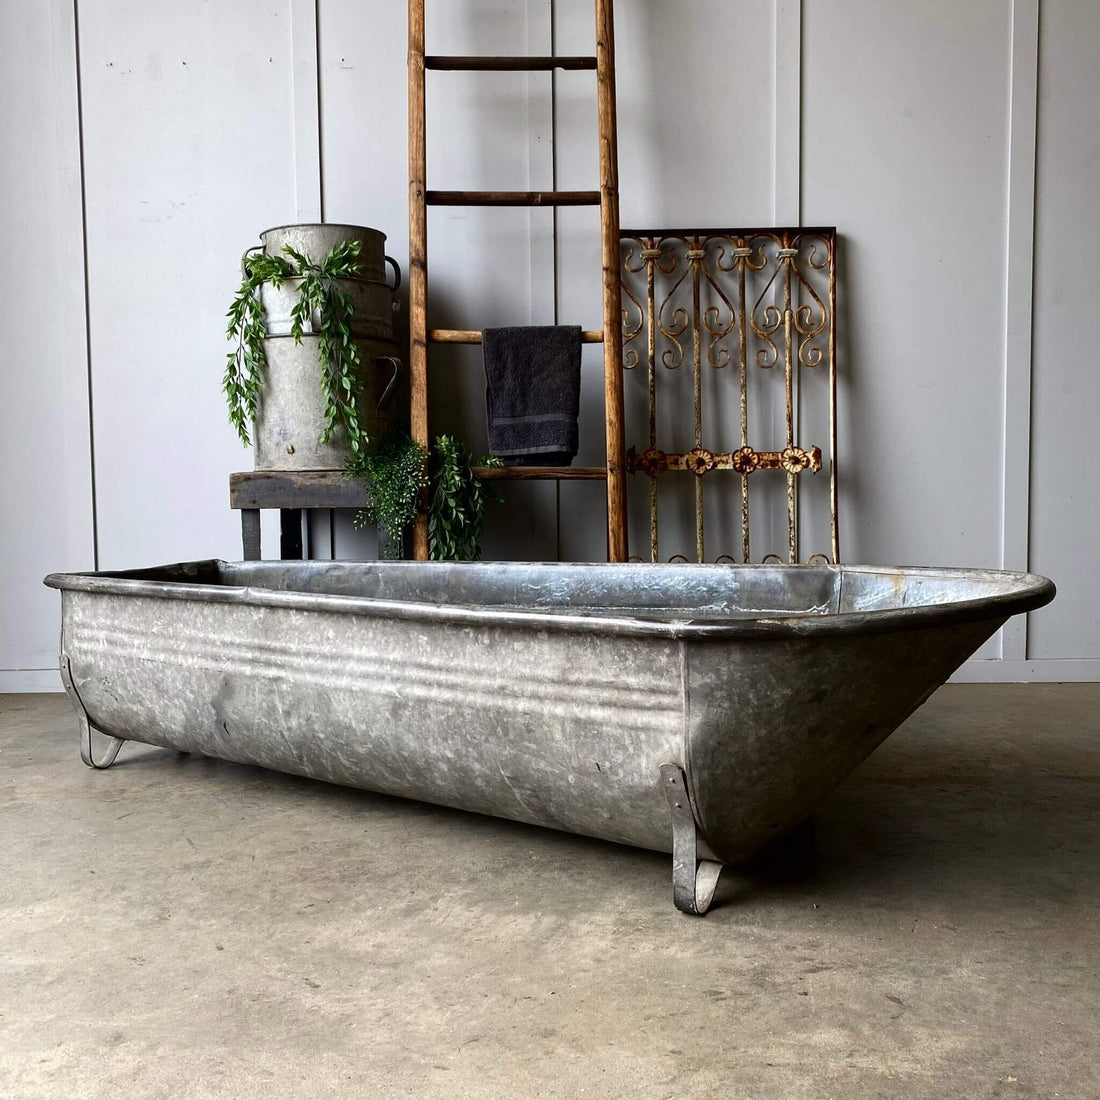 Vintage garden decor, antique tin bath tub